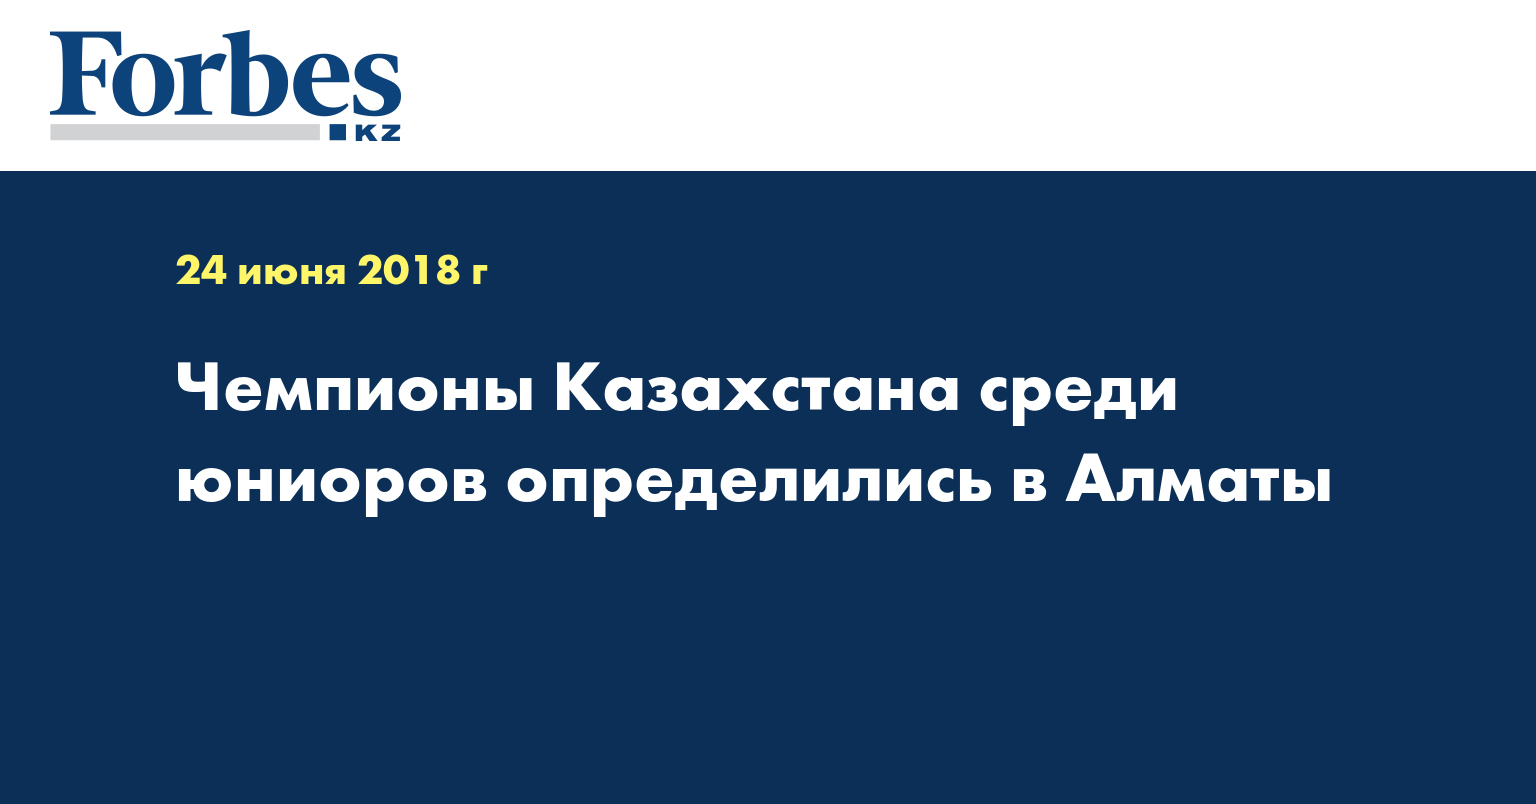 Чемпионы Казахстана среди юниоров определились в Алматы 